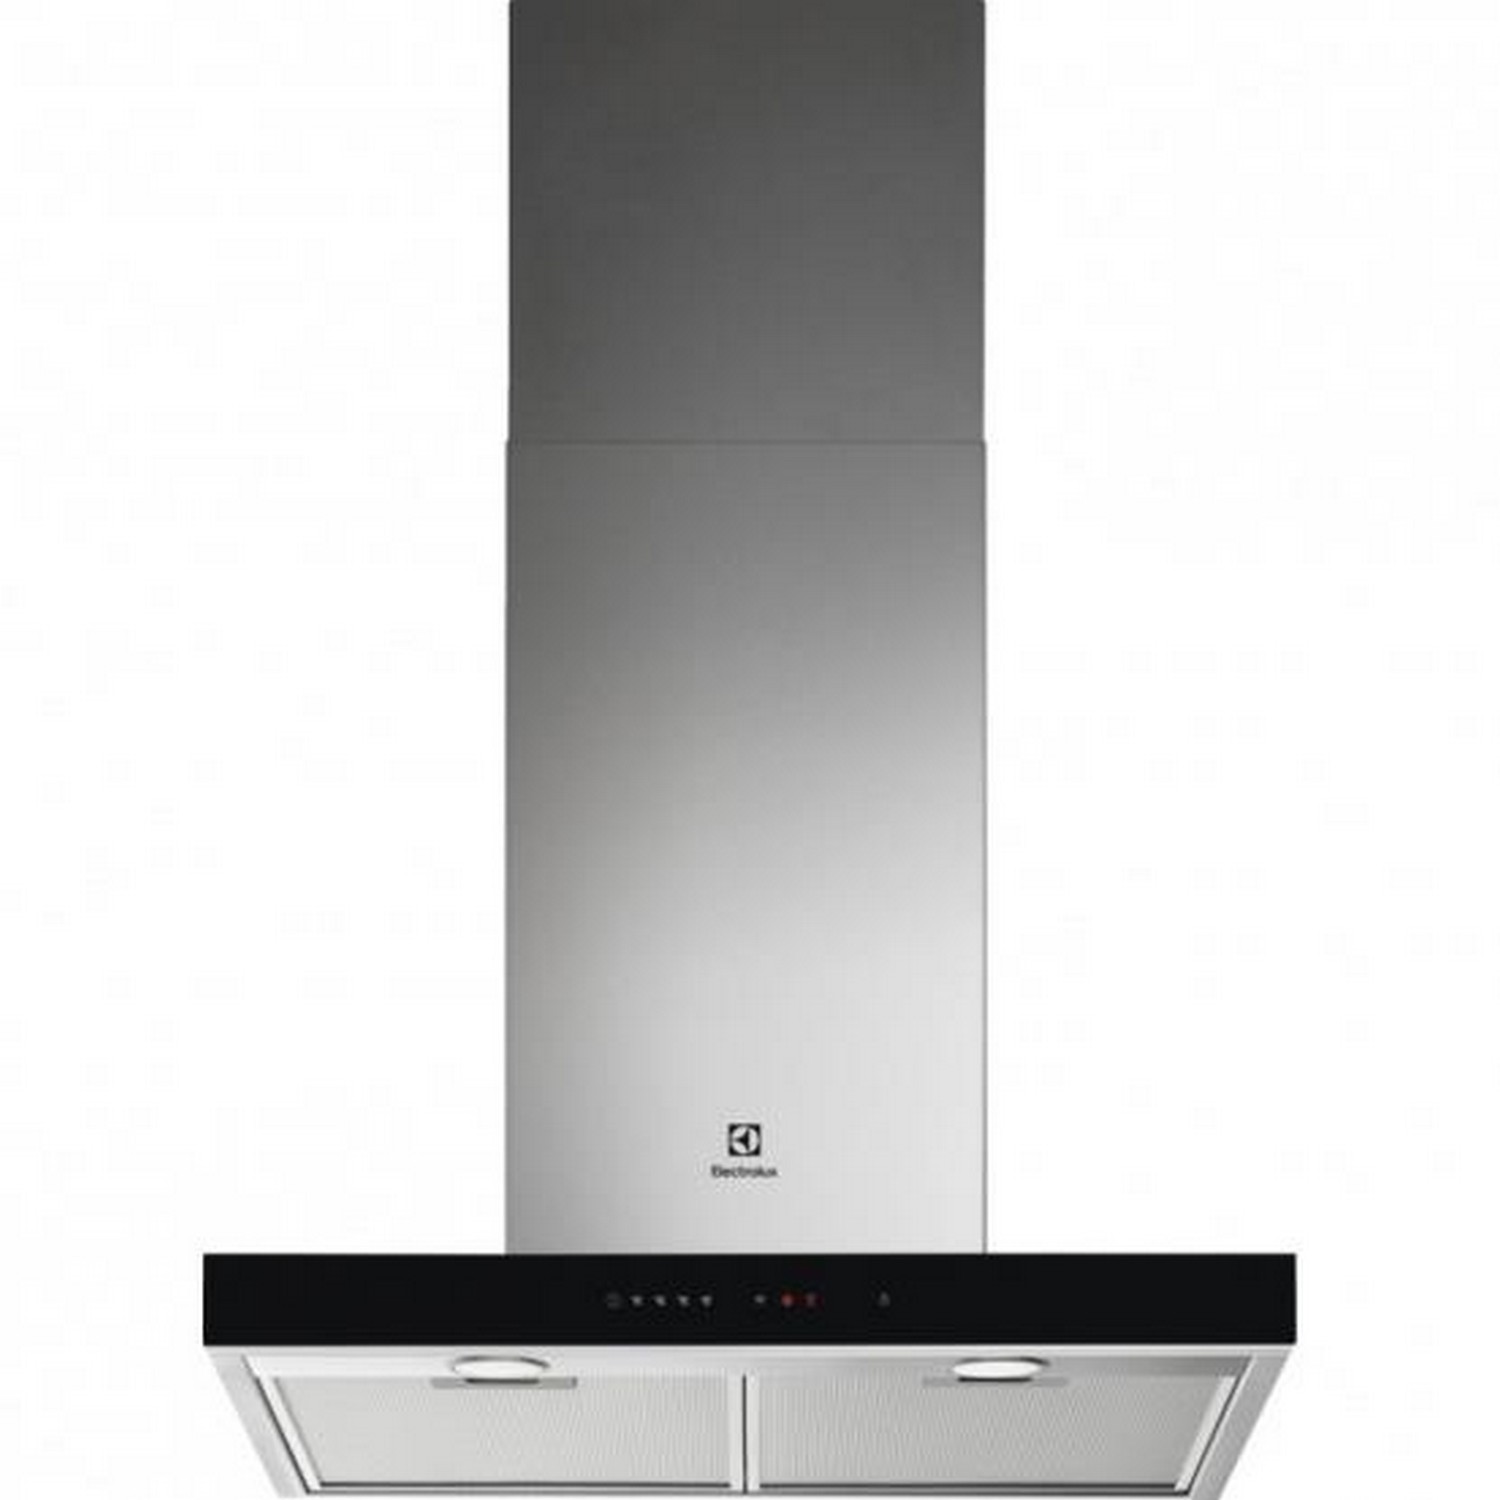 Кухонная вытяжка Electrolux LFT766X в интернет-магазине, главное фото